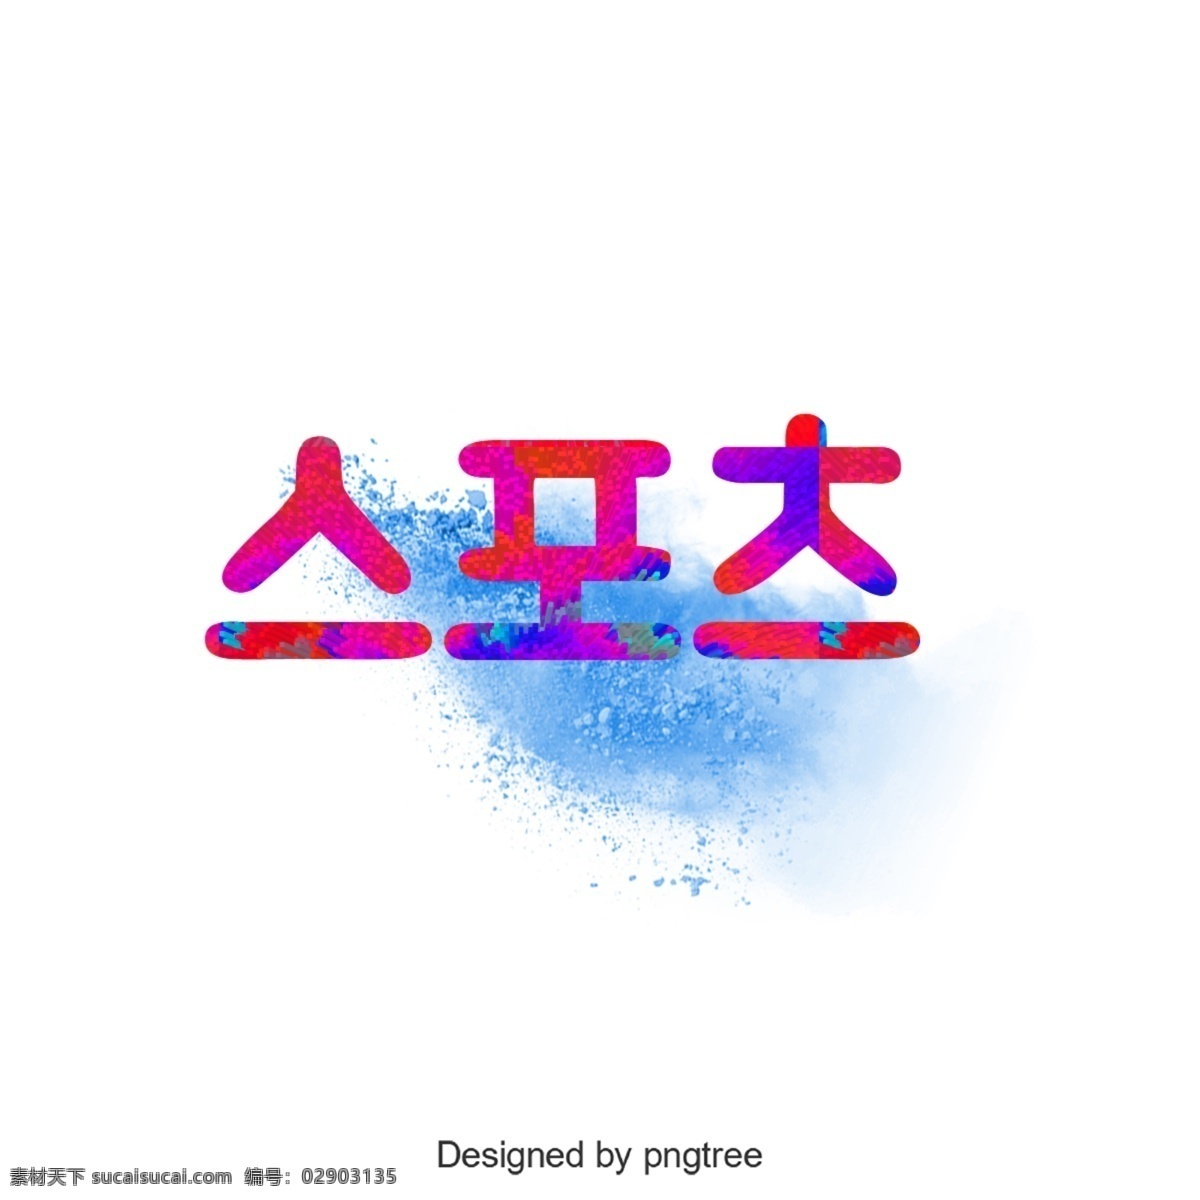 蓝色 烟 元素 红色 梯度 体育 字体 运动 文本 字形 活版印刷 美丽 元件 插图 汉字排版 抽烟